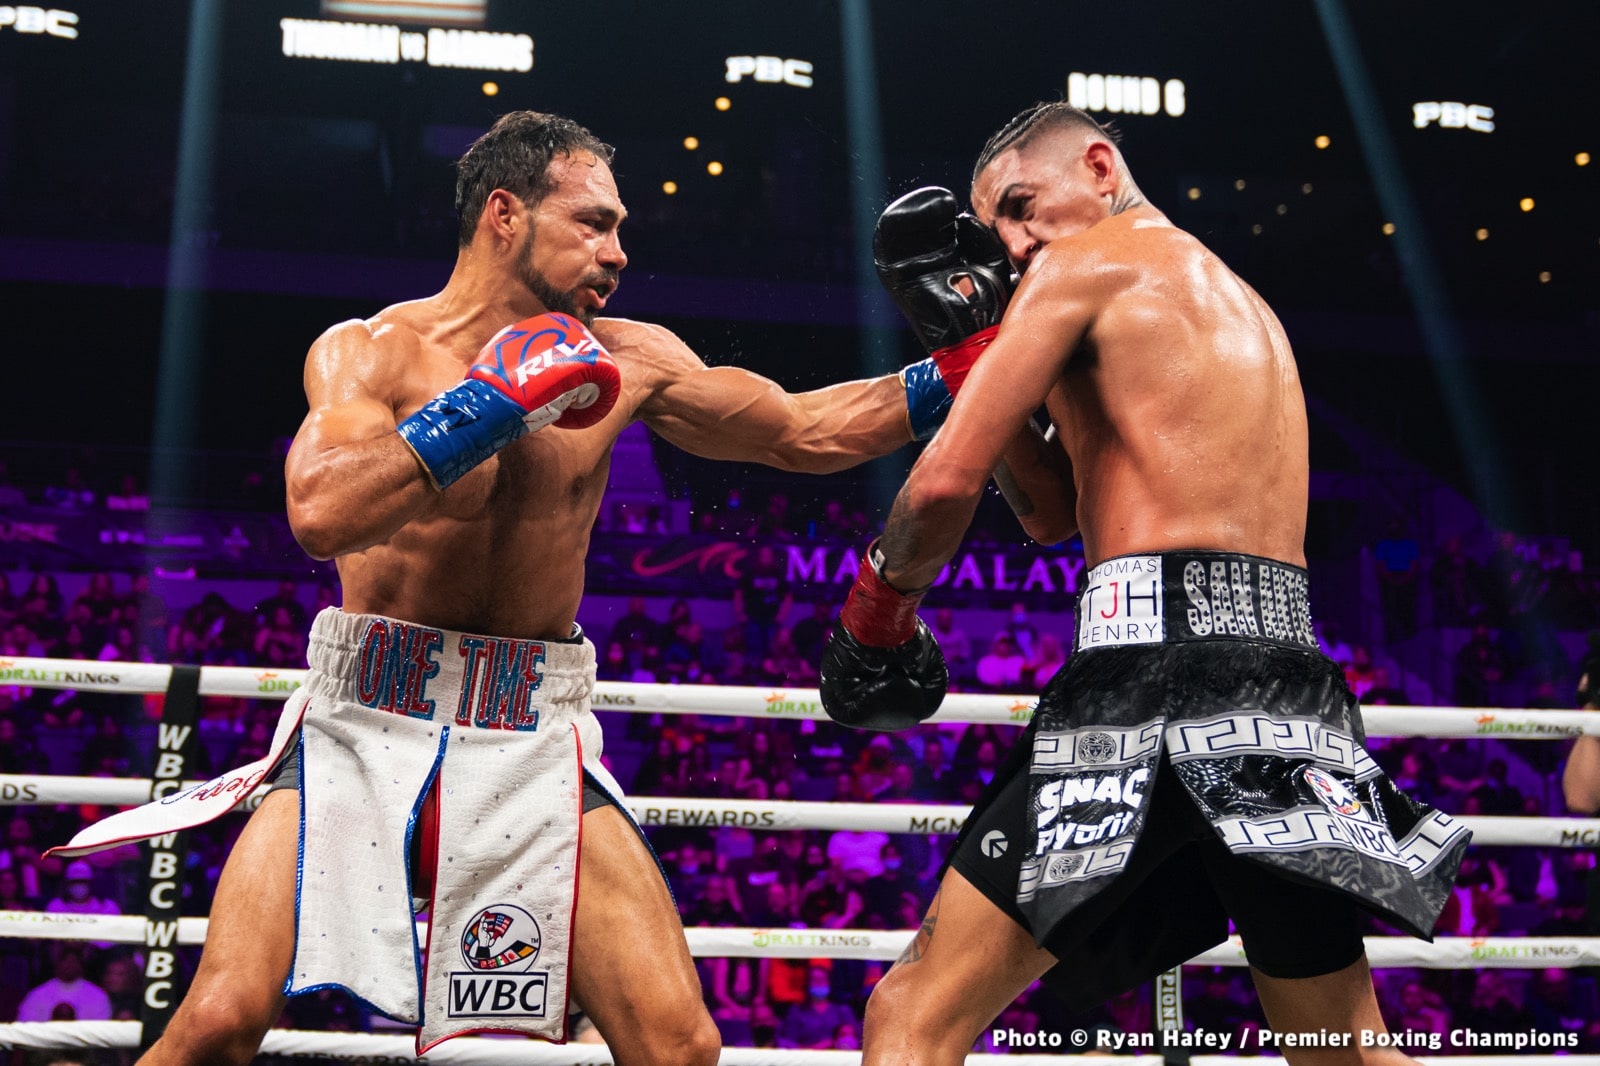 Mario Barrios boxing image / photo